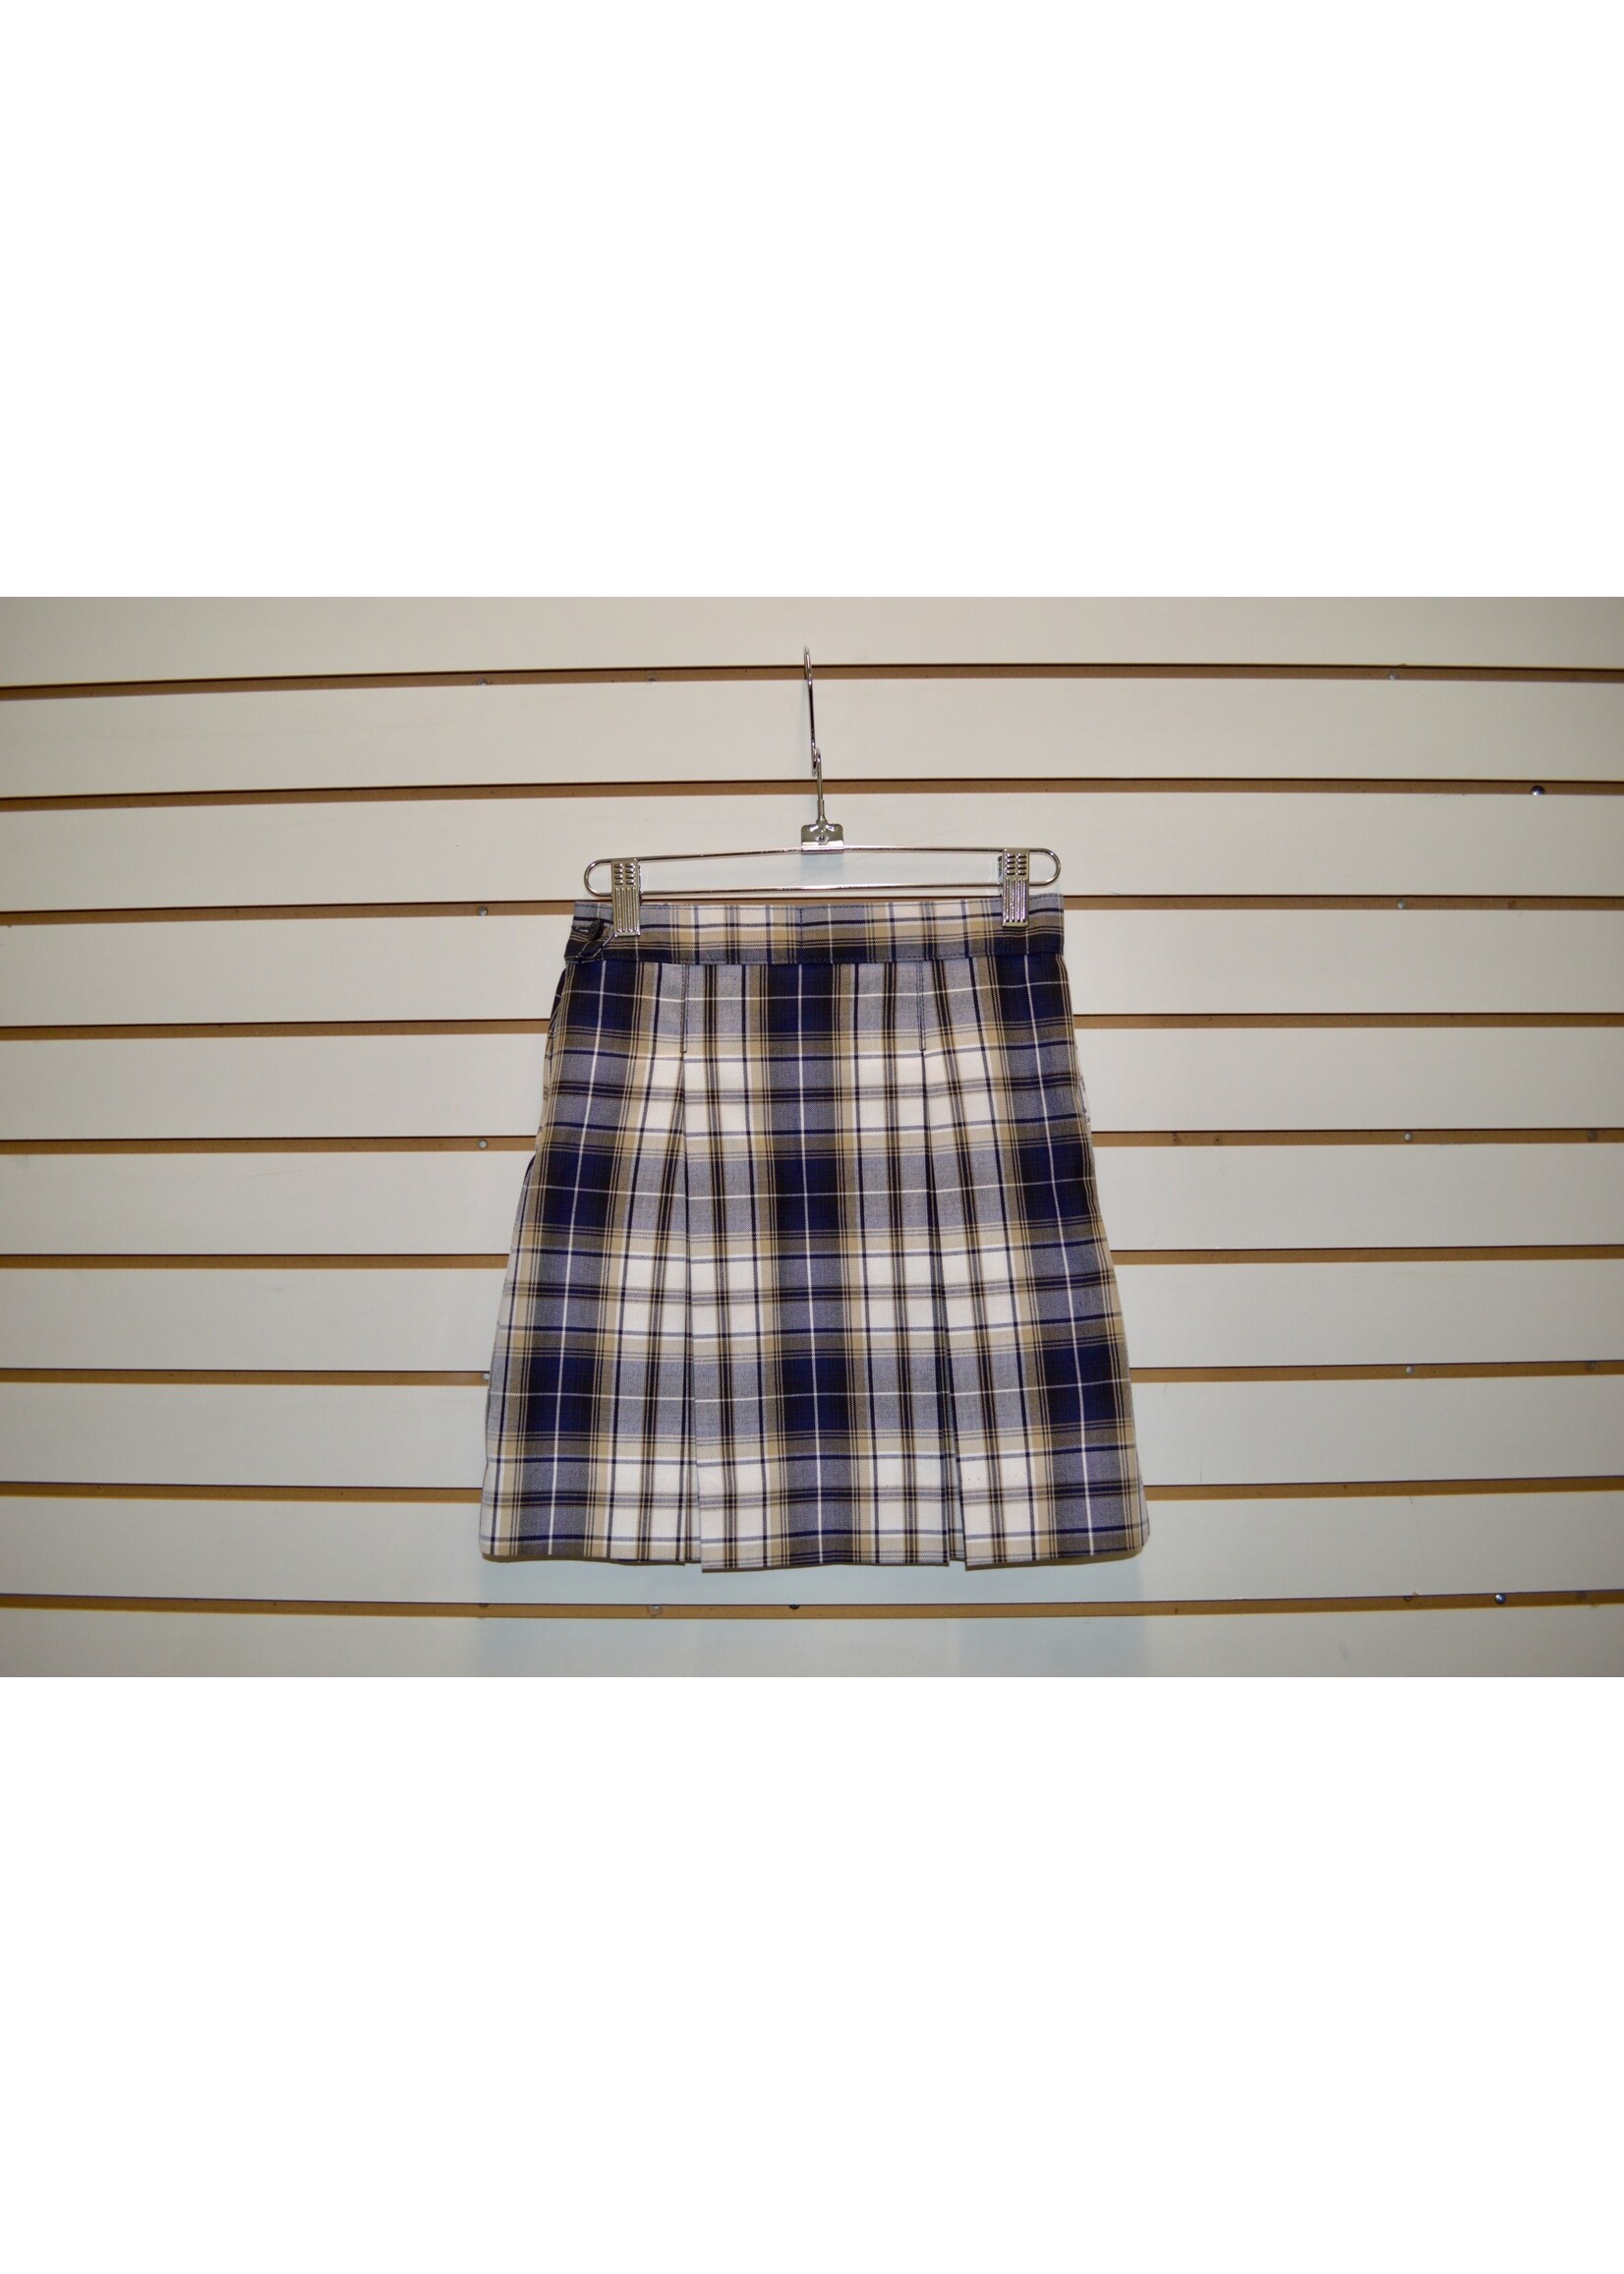 Plaid 4 pleat Skirt